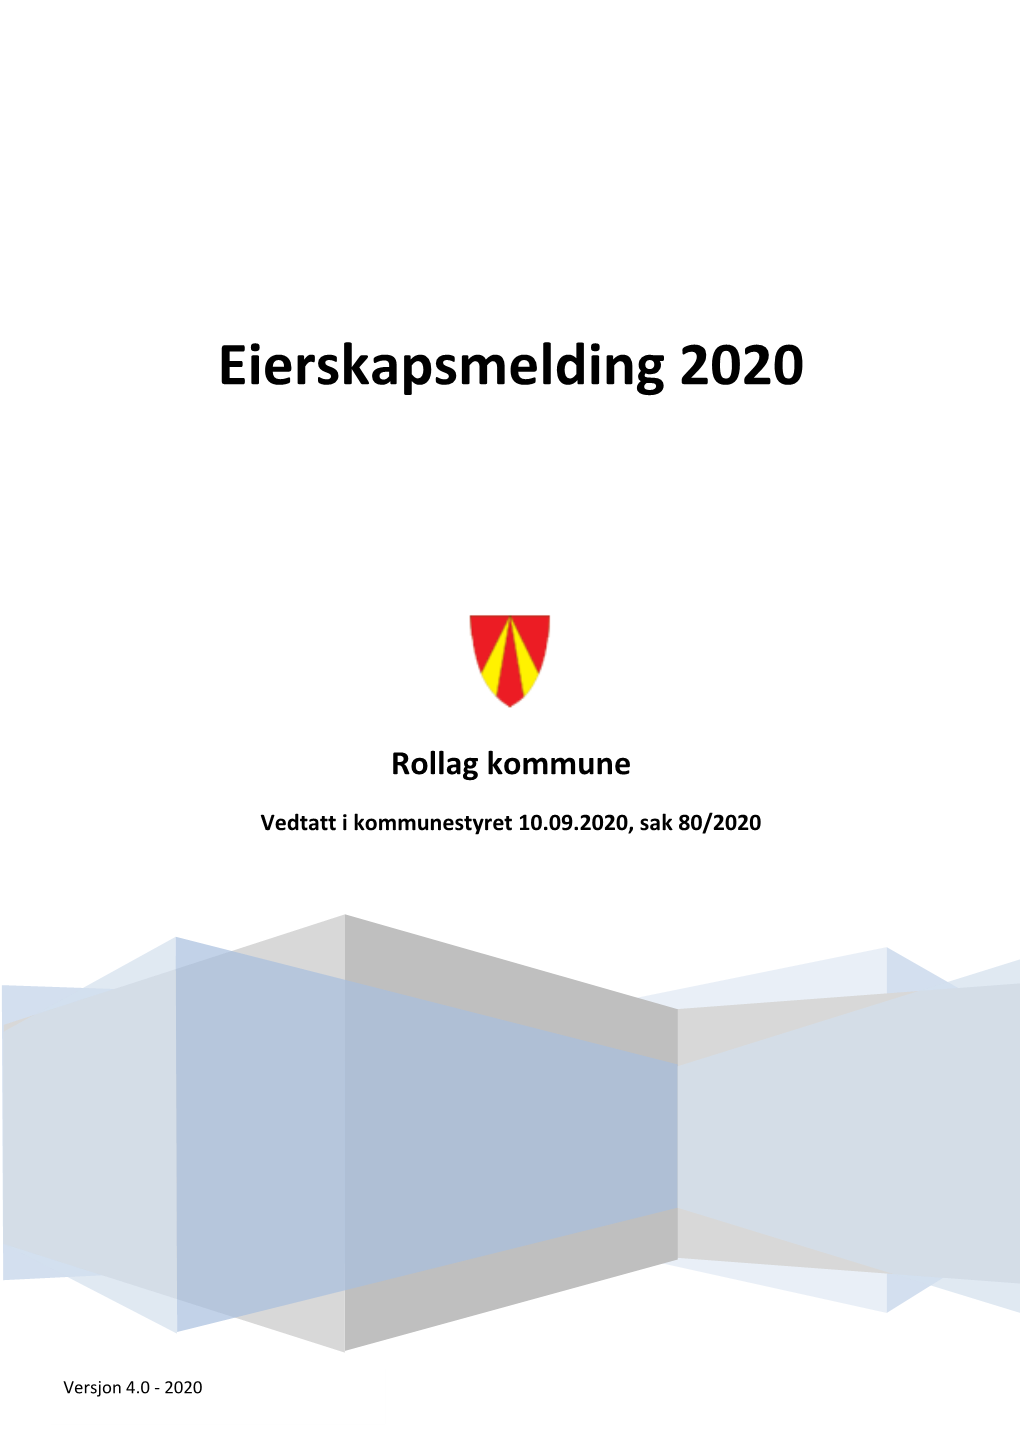 Eierskapsmelding 2020 for Rollag Kommune